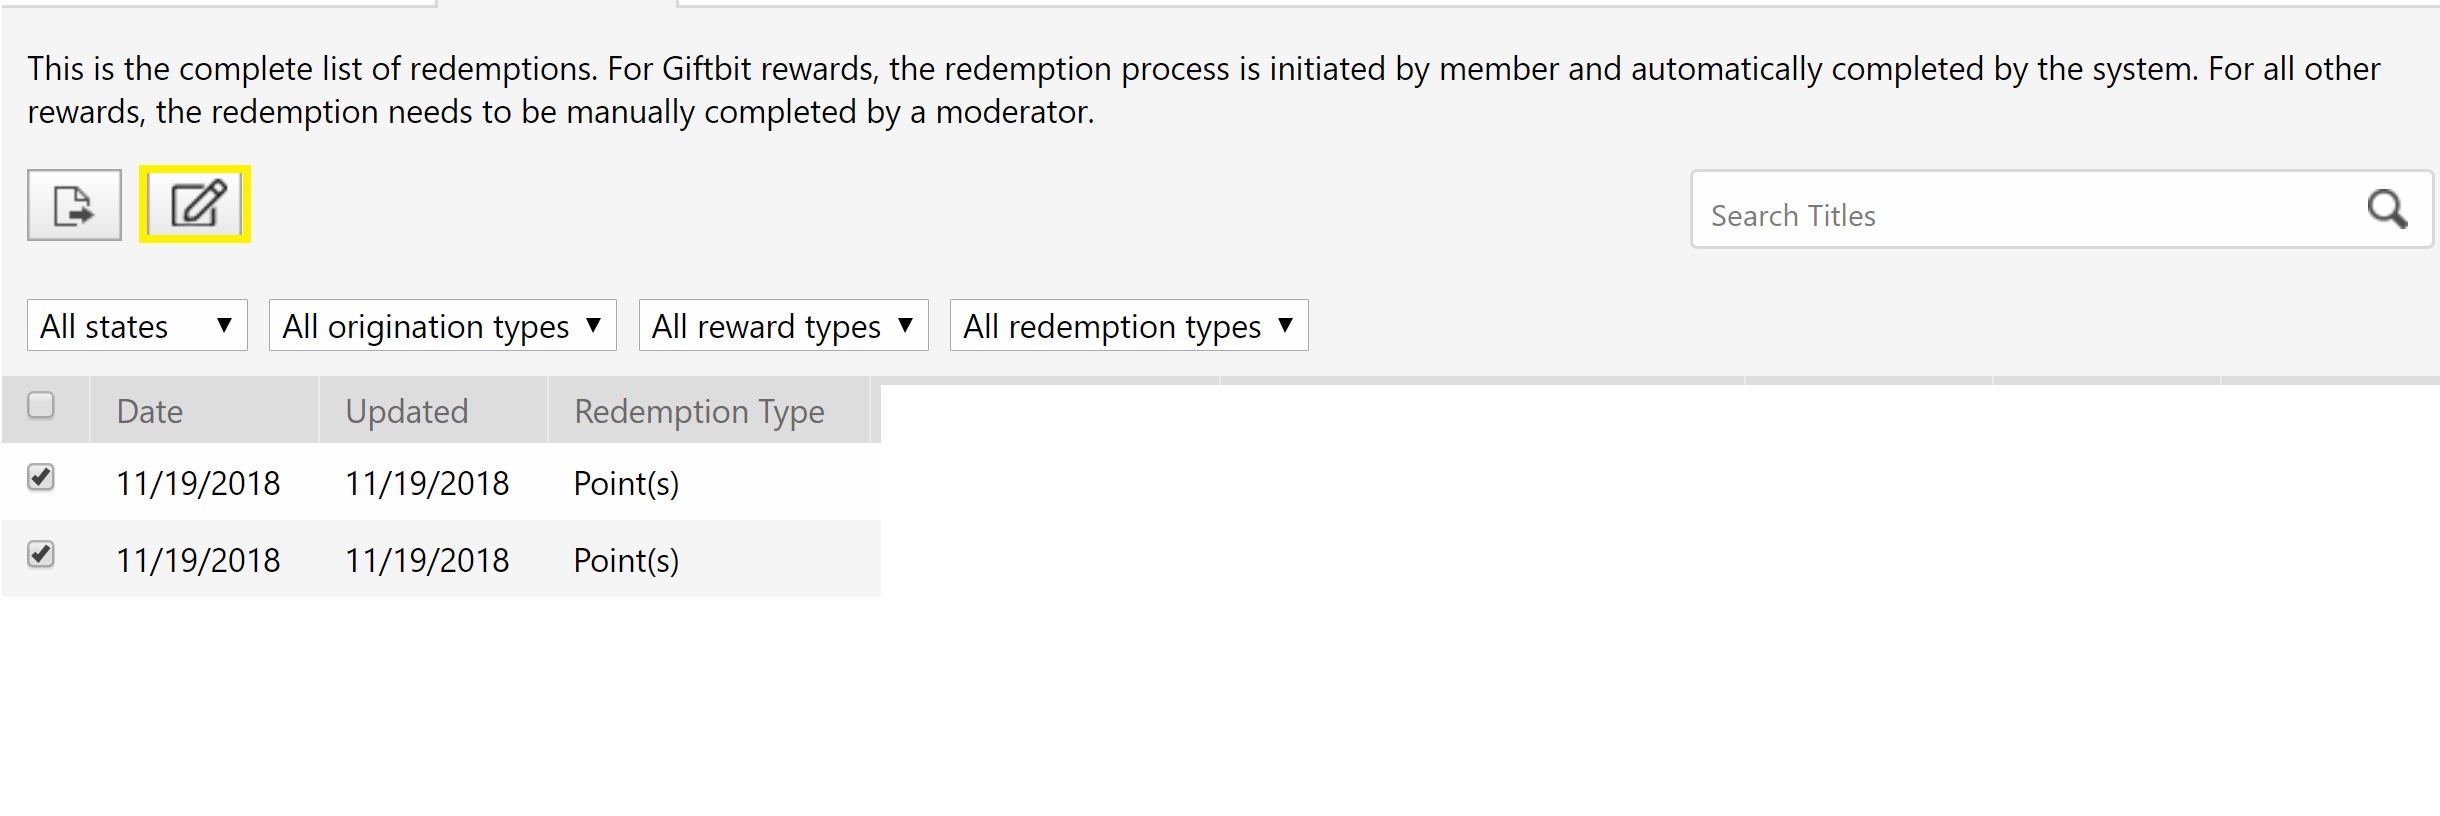 selected-members-redemption-status-batch-update-1-3.jpg